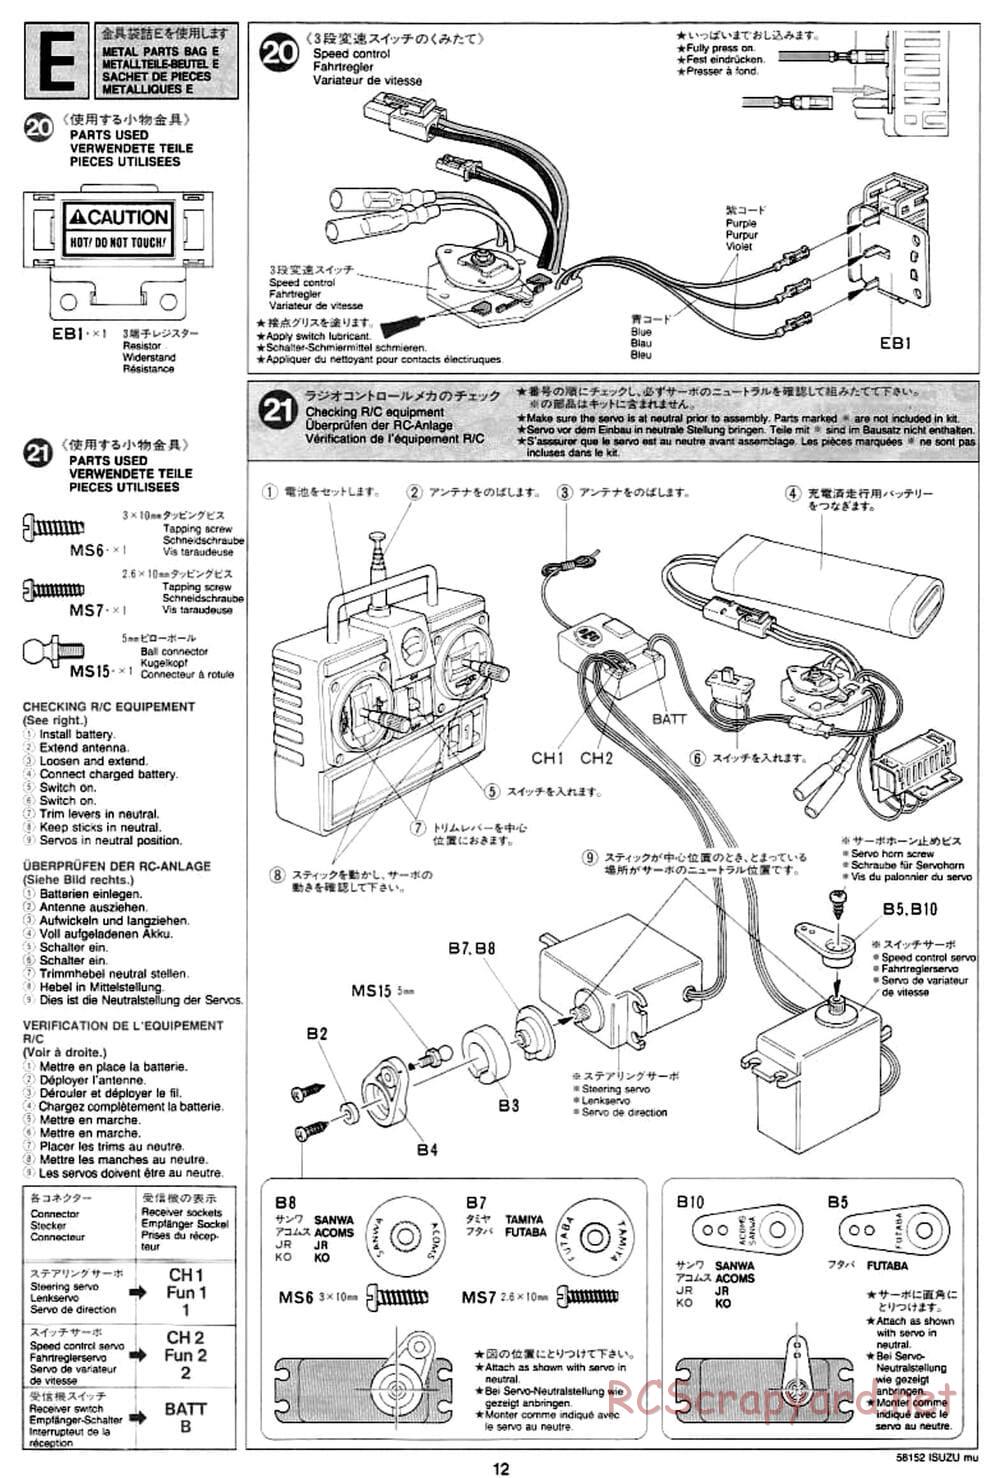 Tamiya - Isuzu Mu - CC-01 Chassis - Manual - Page 12